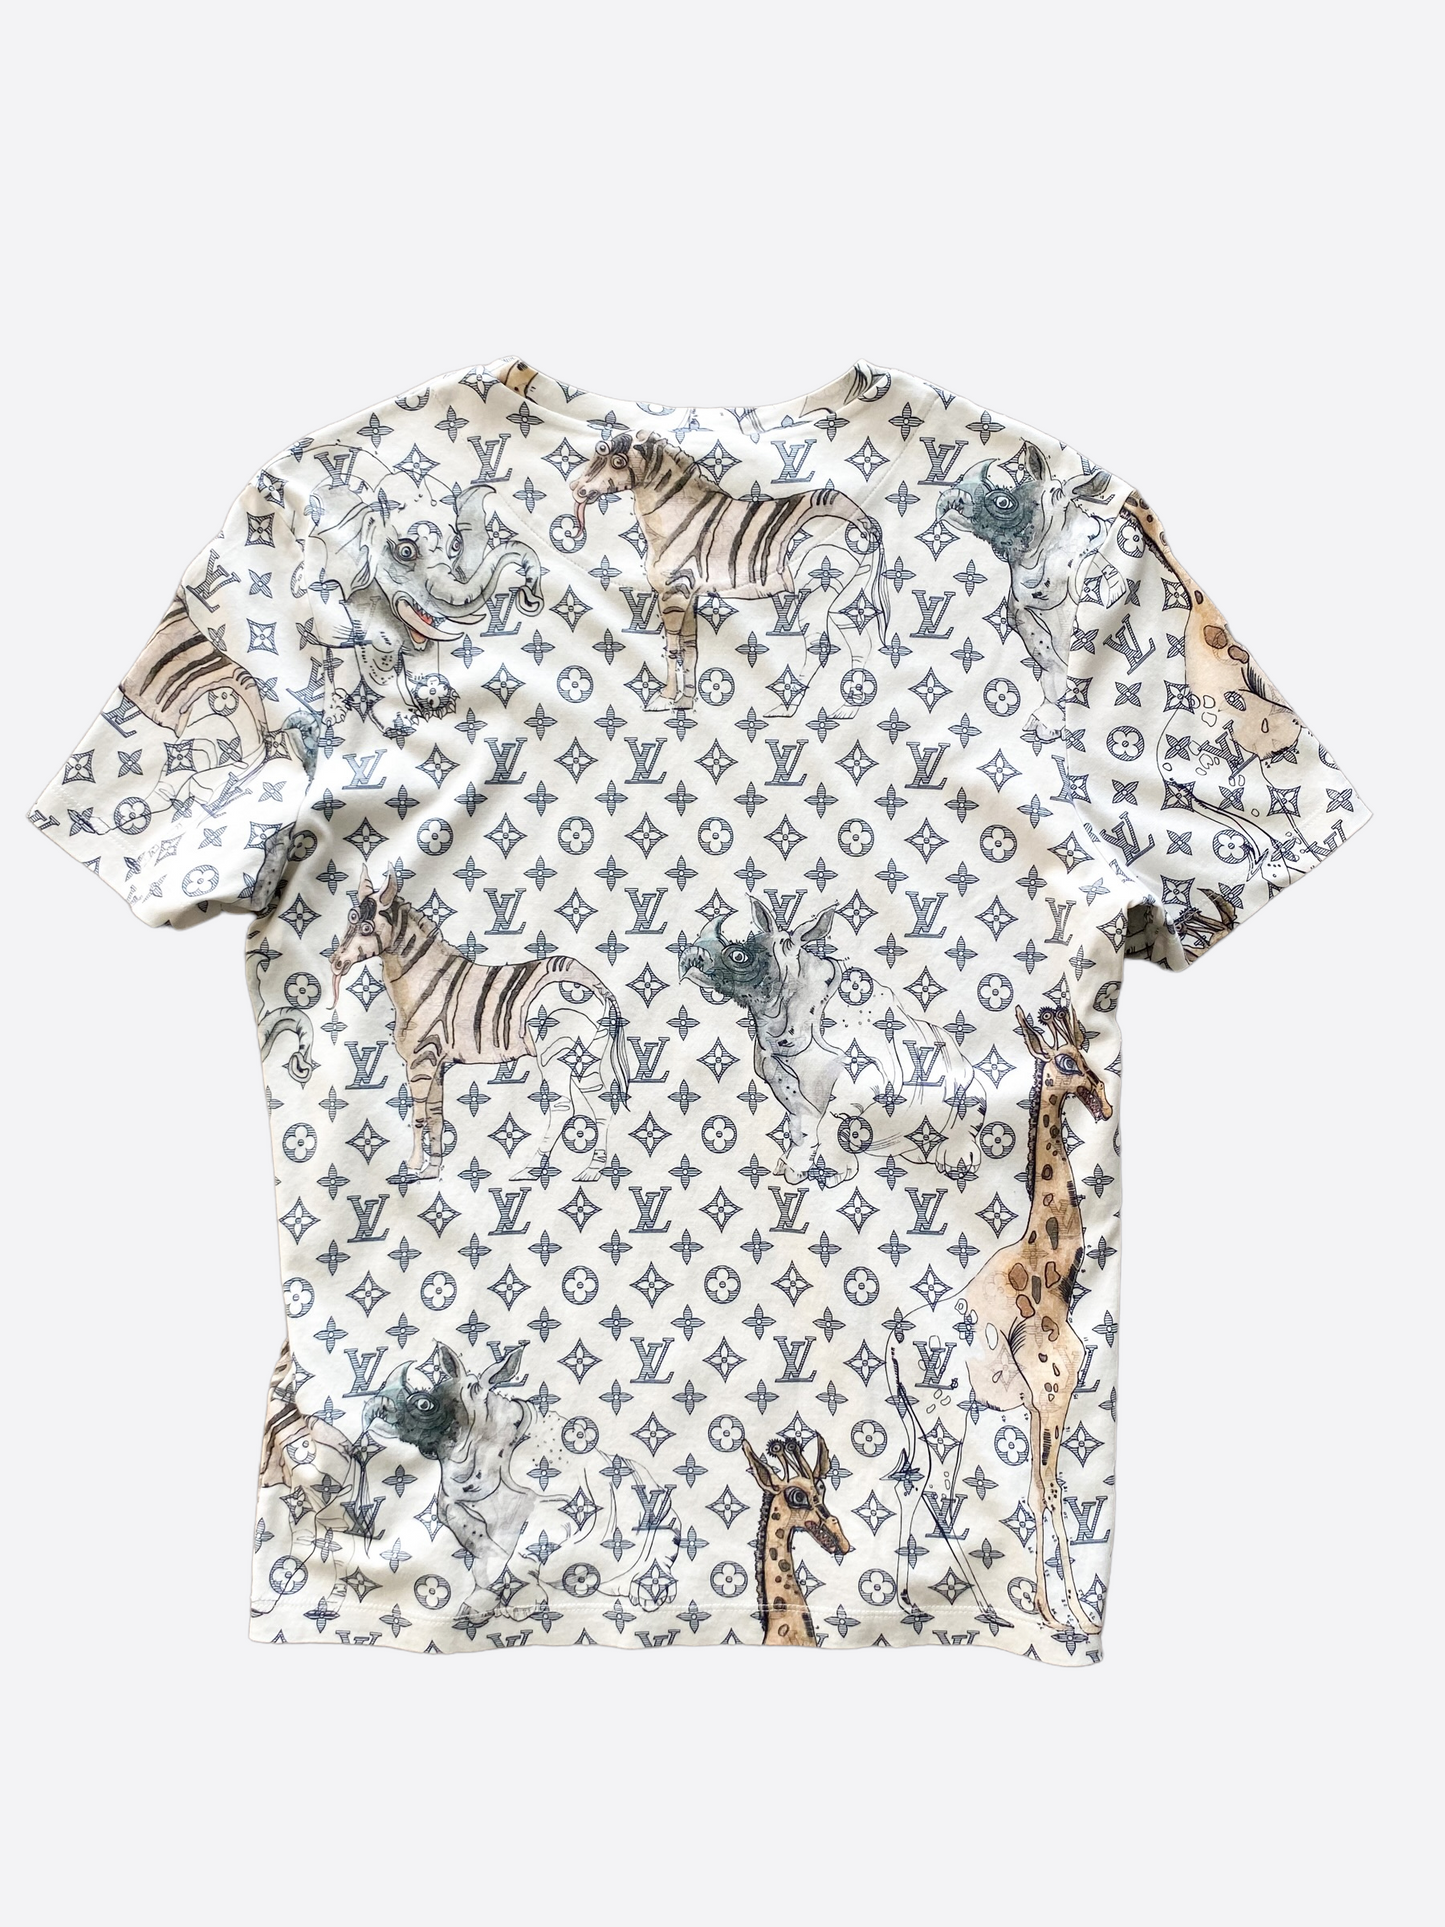 Louis Vuitton Monogram Giraffe T Shirt